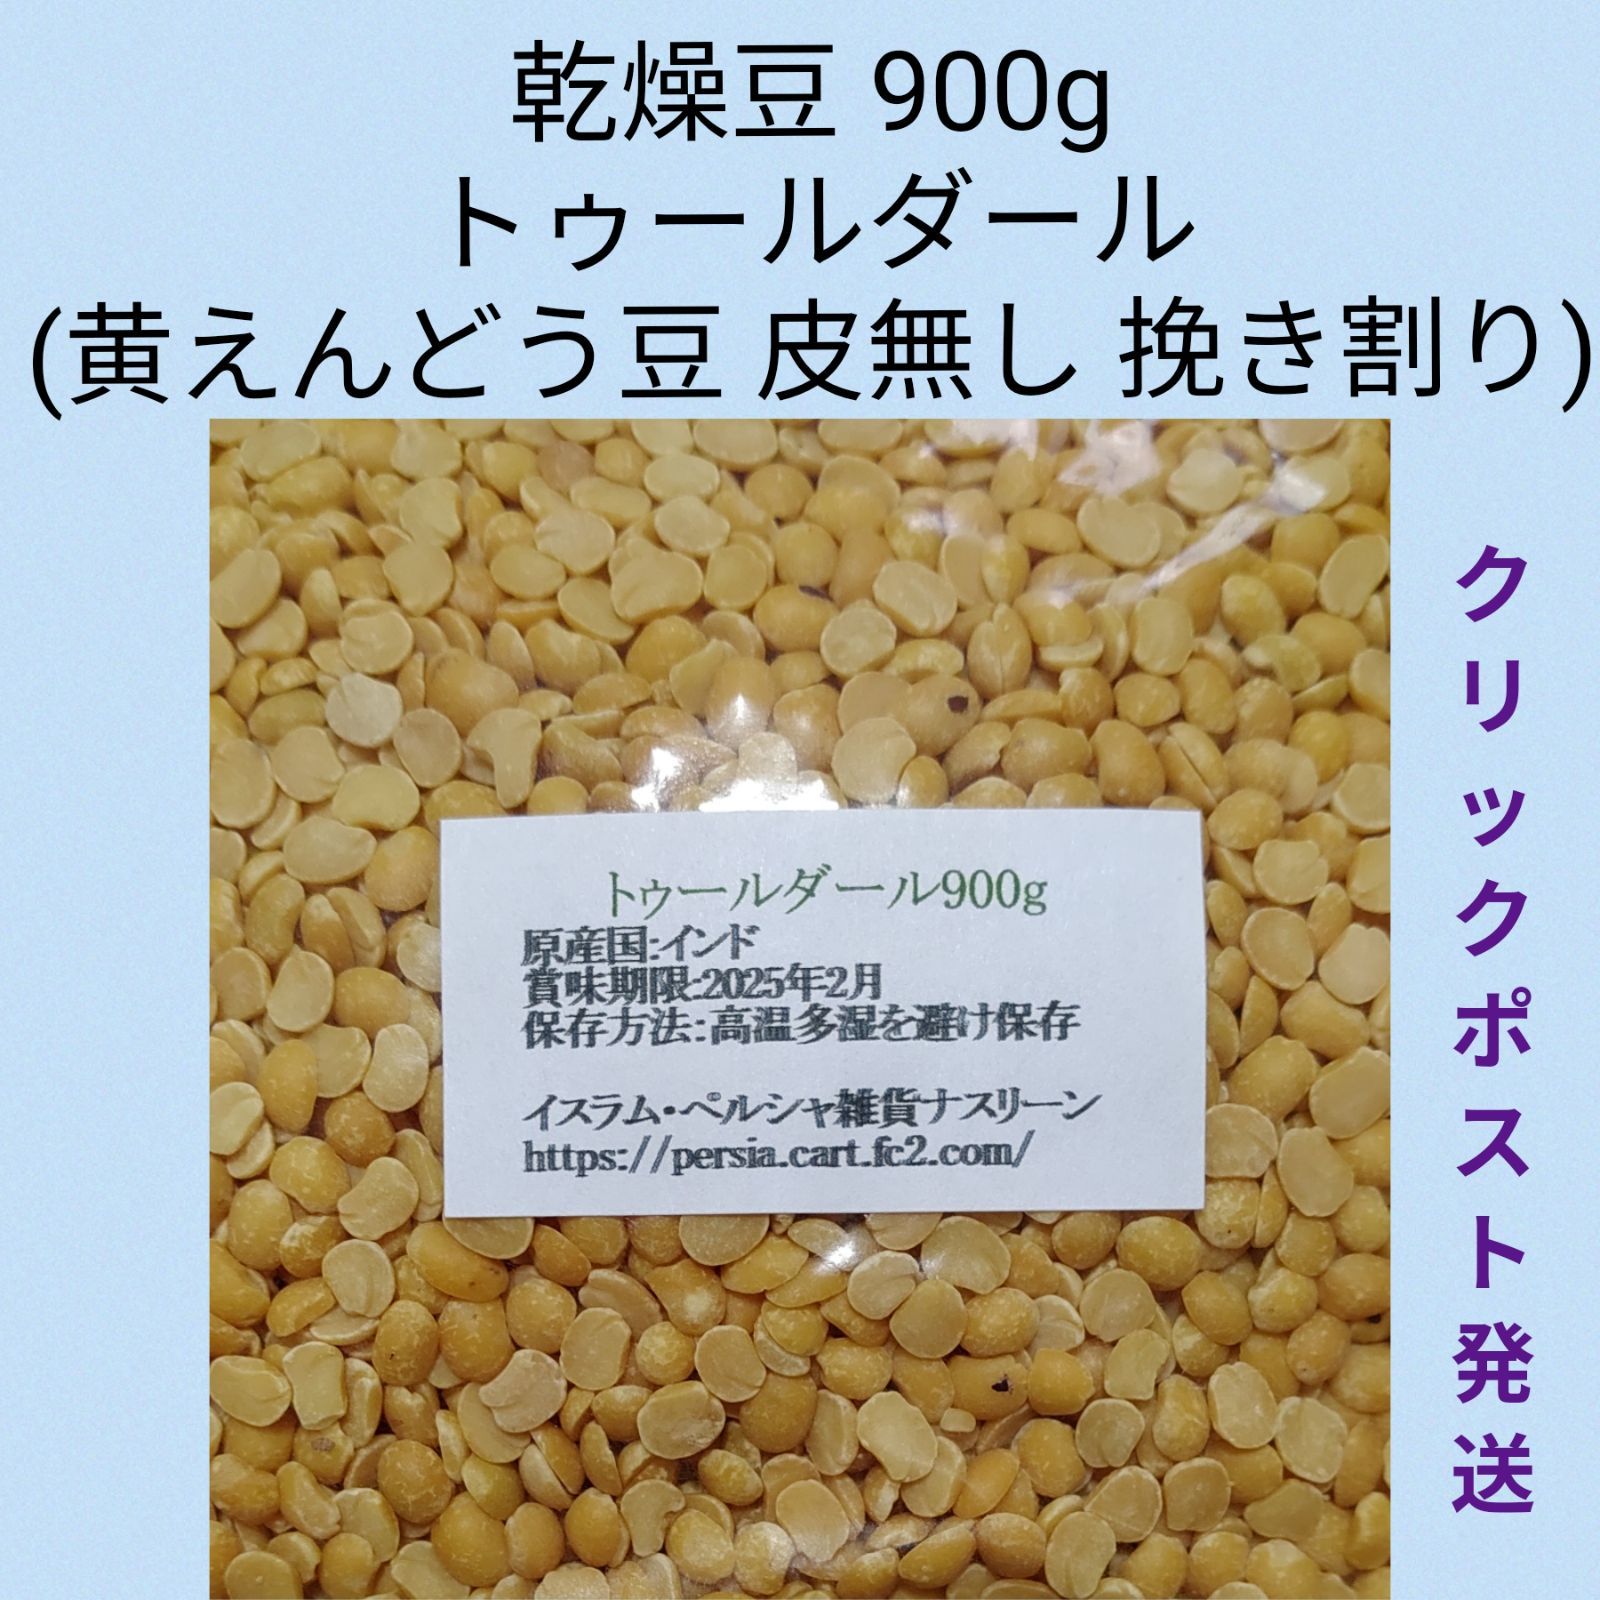 ⑰トゥールダール豆900g  乾燥豆